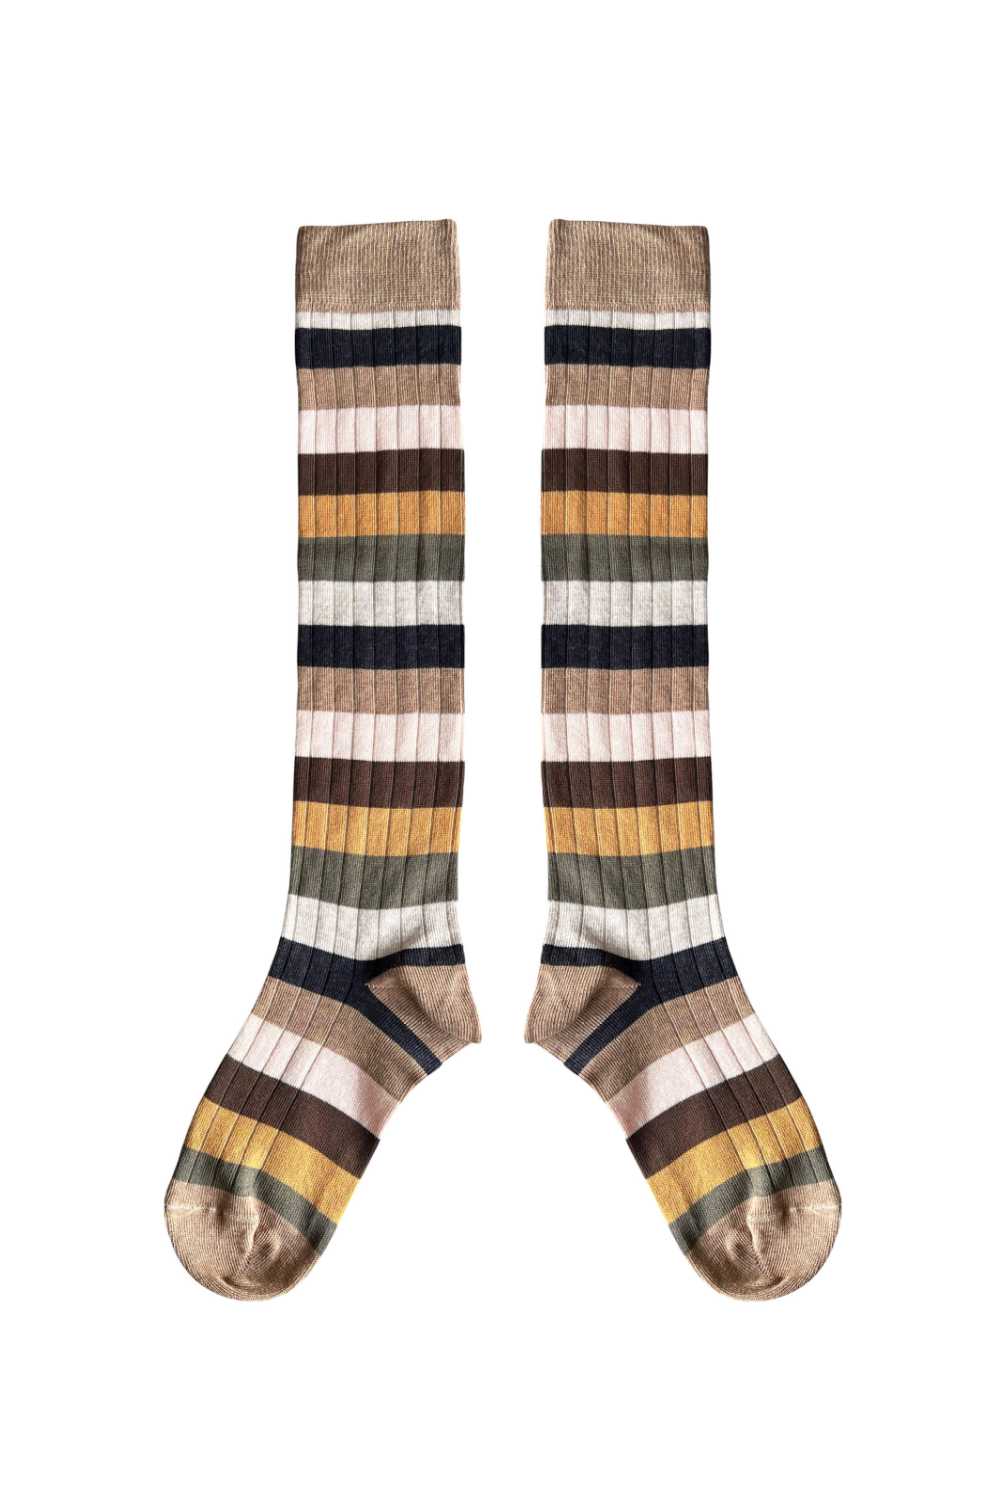 Enfys Long Socks - Enfys Stripe - Child